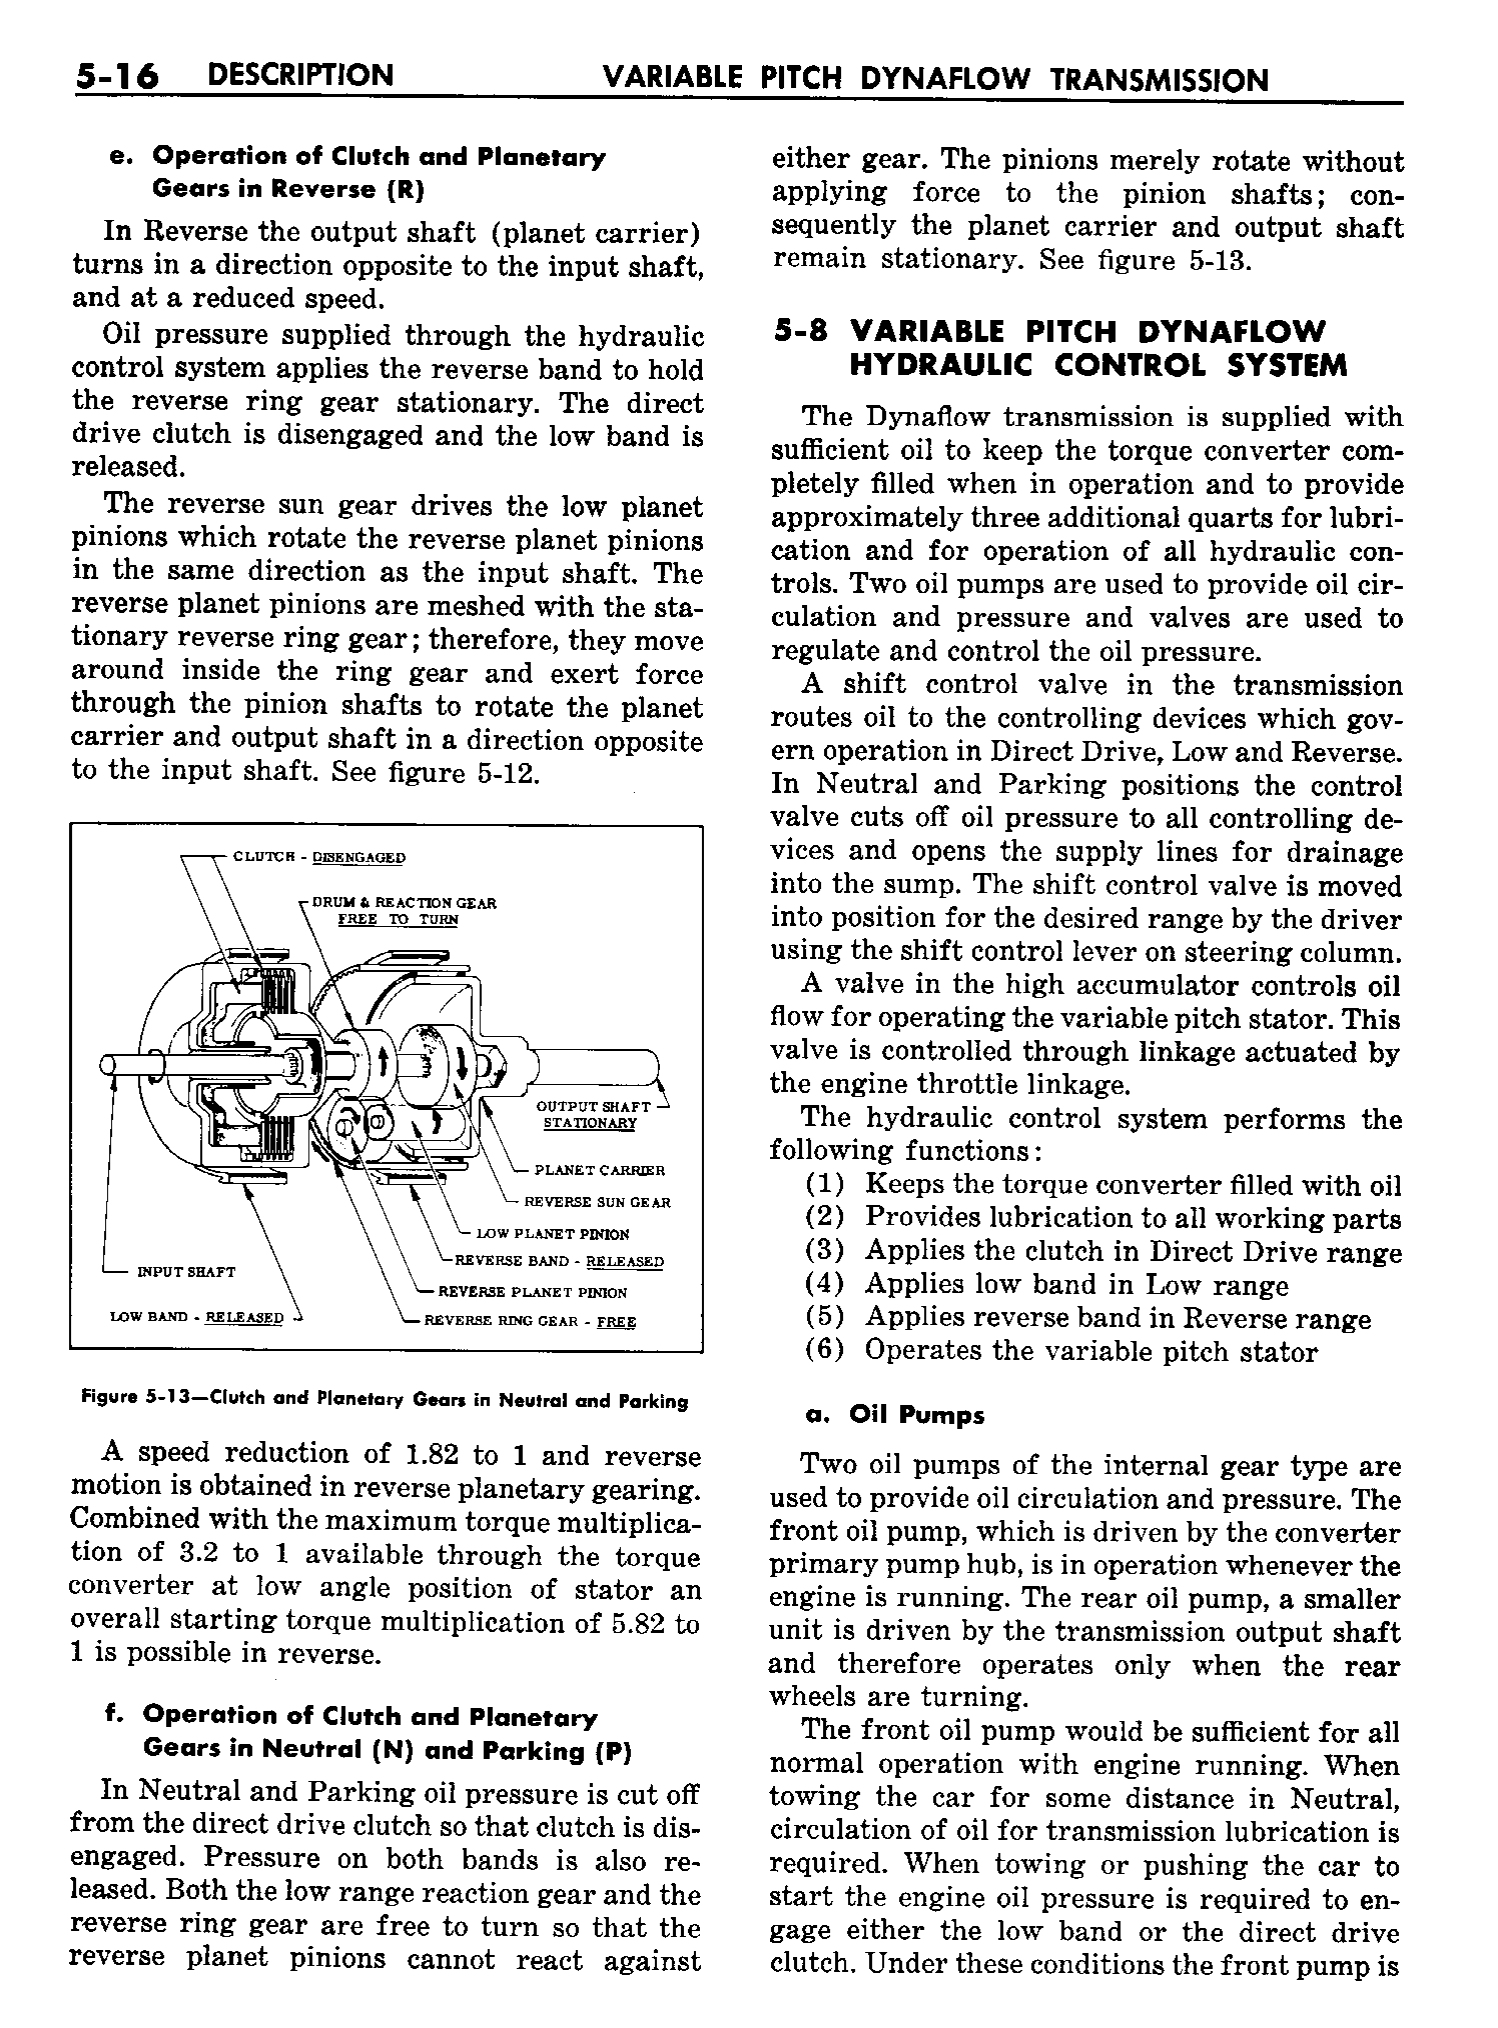 n_06 1958 Buick Shop Manual - Dynaflow_16.jpg